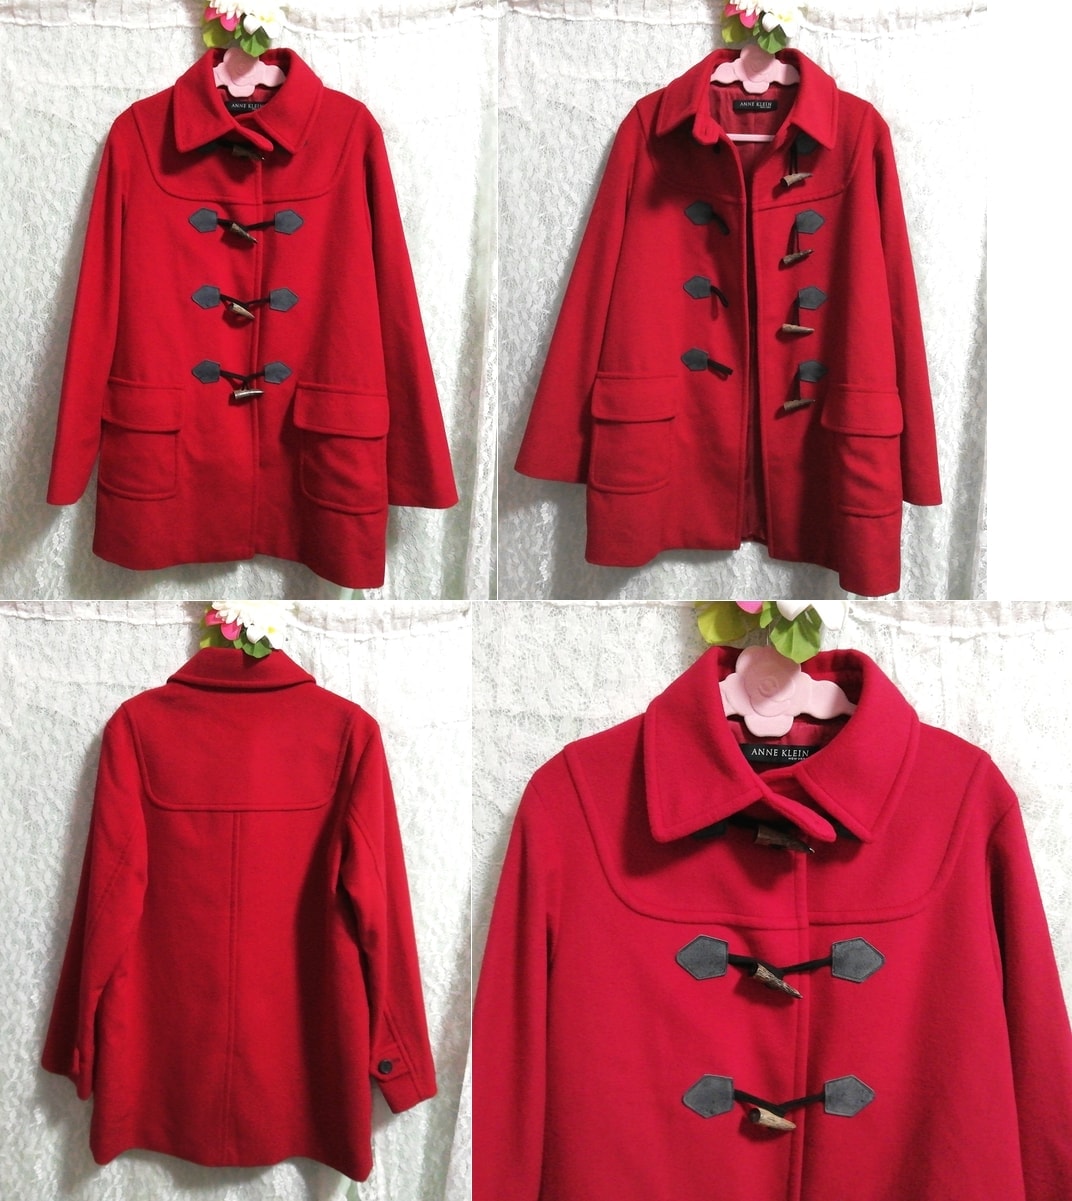 Abrigo tipo trenca de lana de angora roja nueva york de Anne klein, abrigo, abrigo en general, talla m